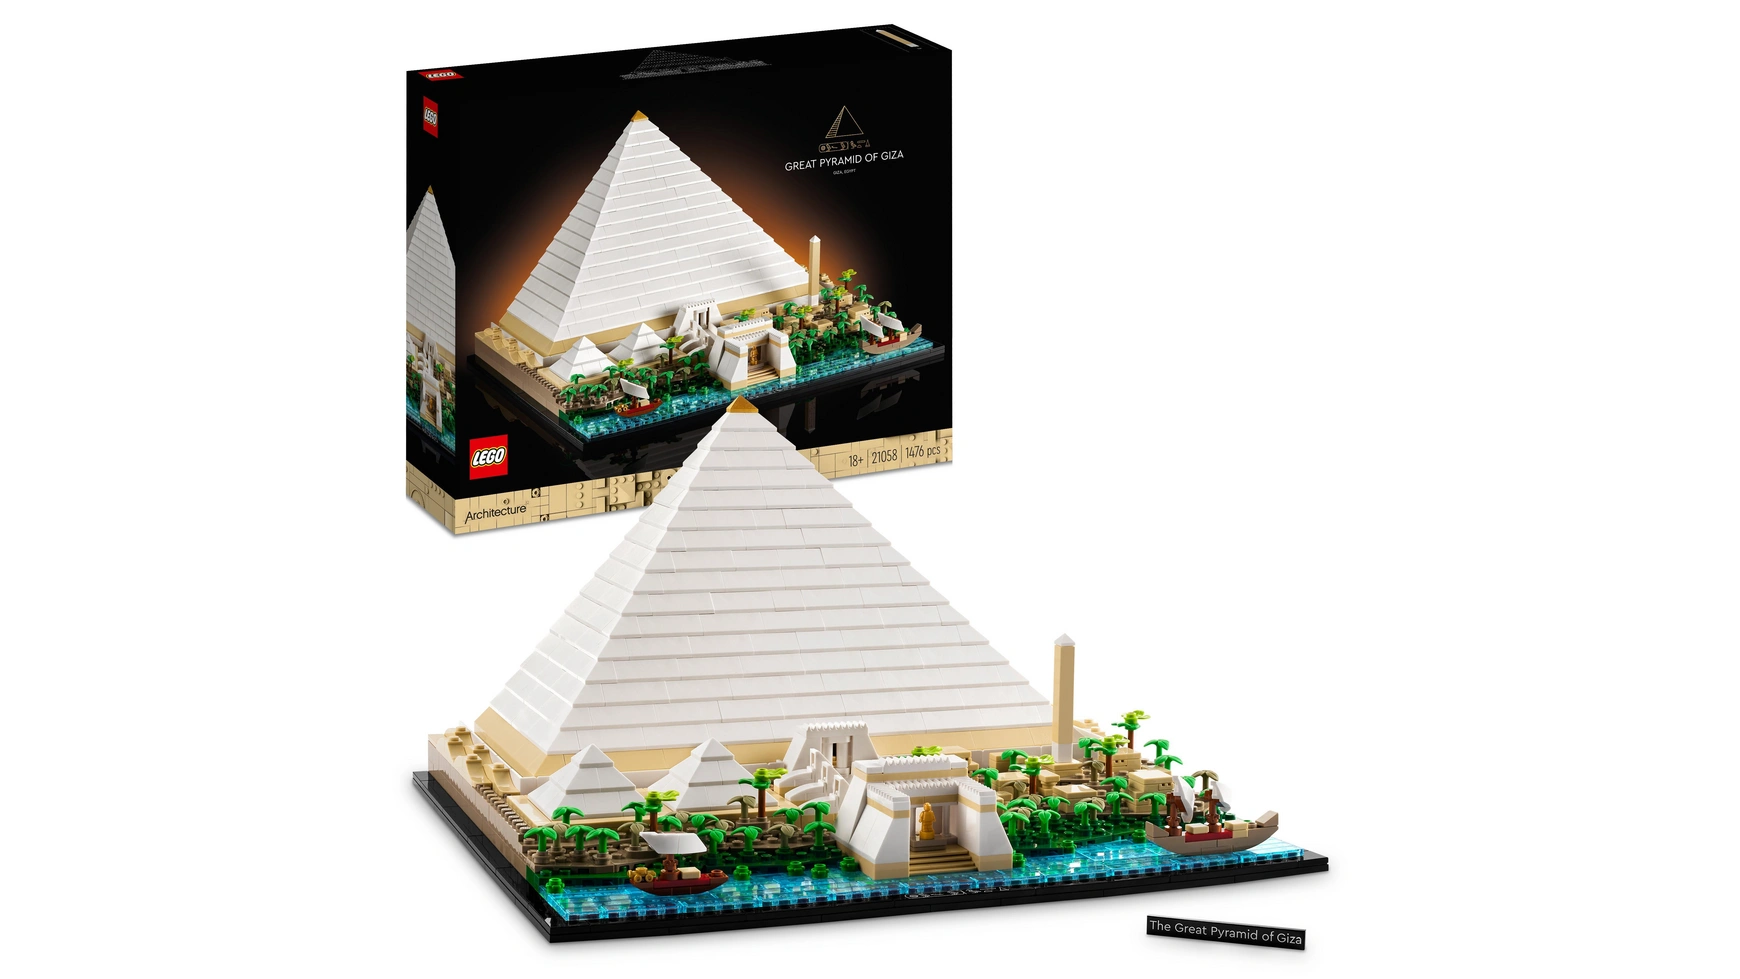 Lego Architecture Великая пирамида конструктор lego architecture великая пирамида гизы 21058 1476 деталей